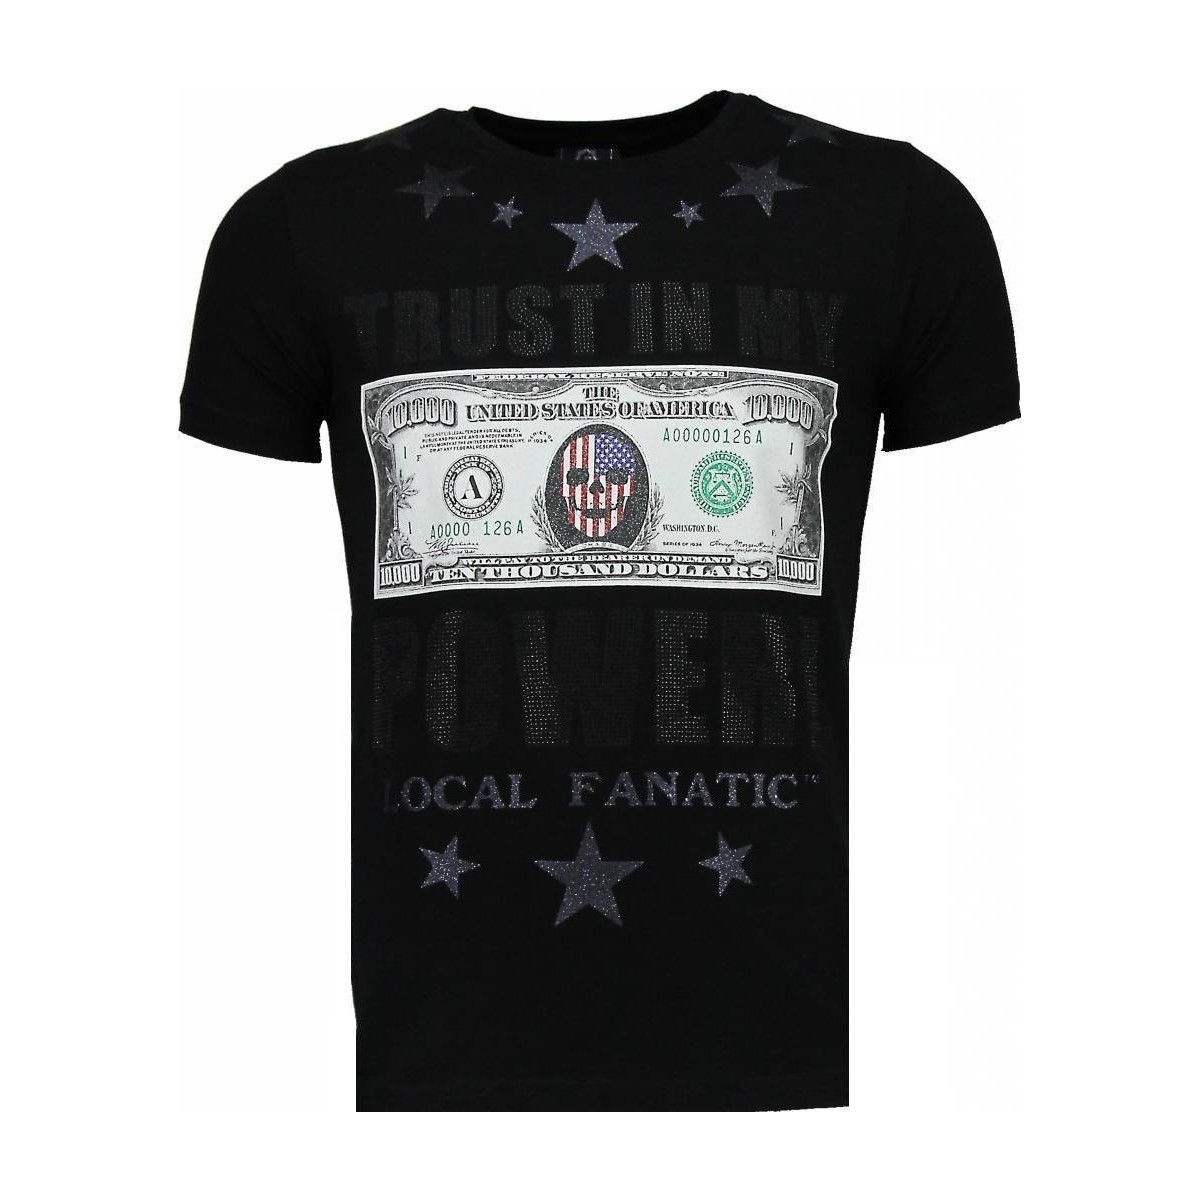 Abbigliamento Uomo T-shirt maniche corte Local Fanatic 20779730 Nero